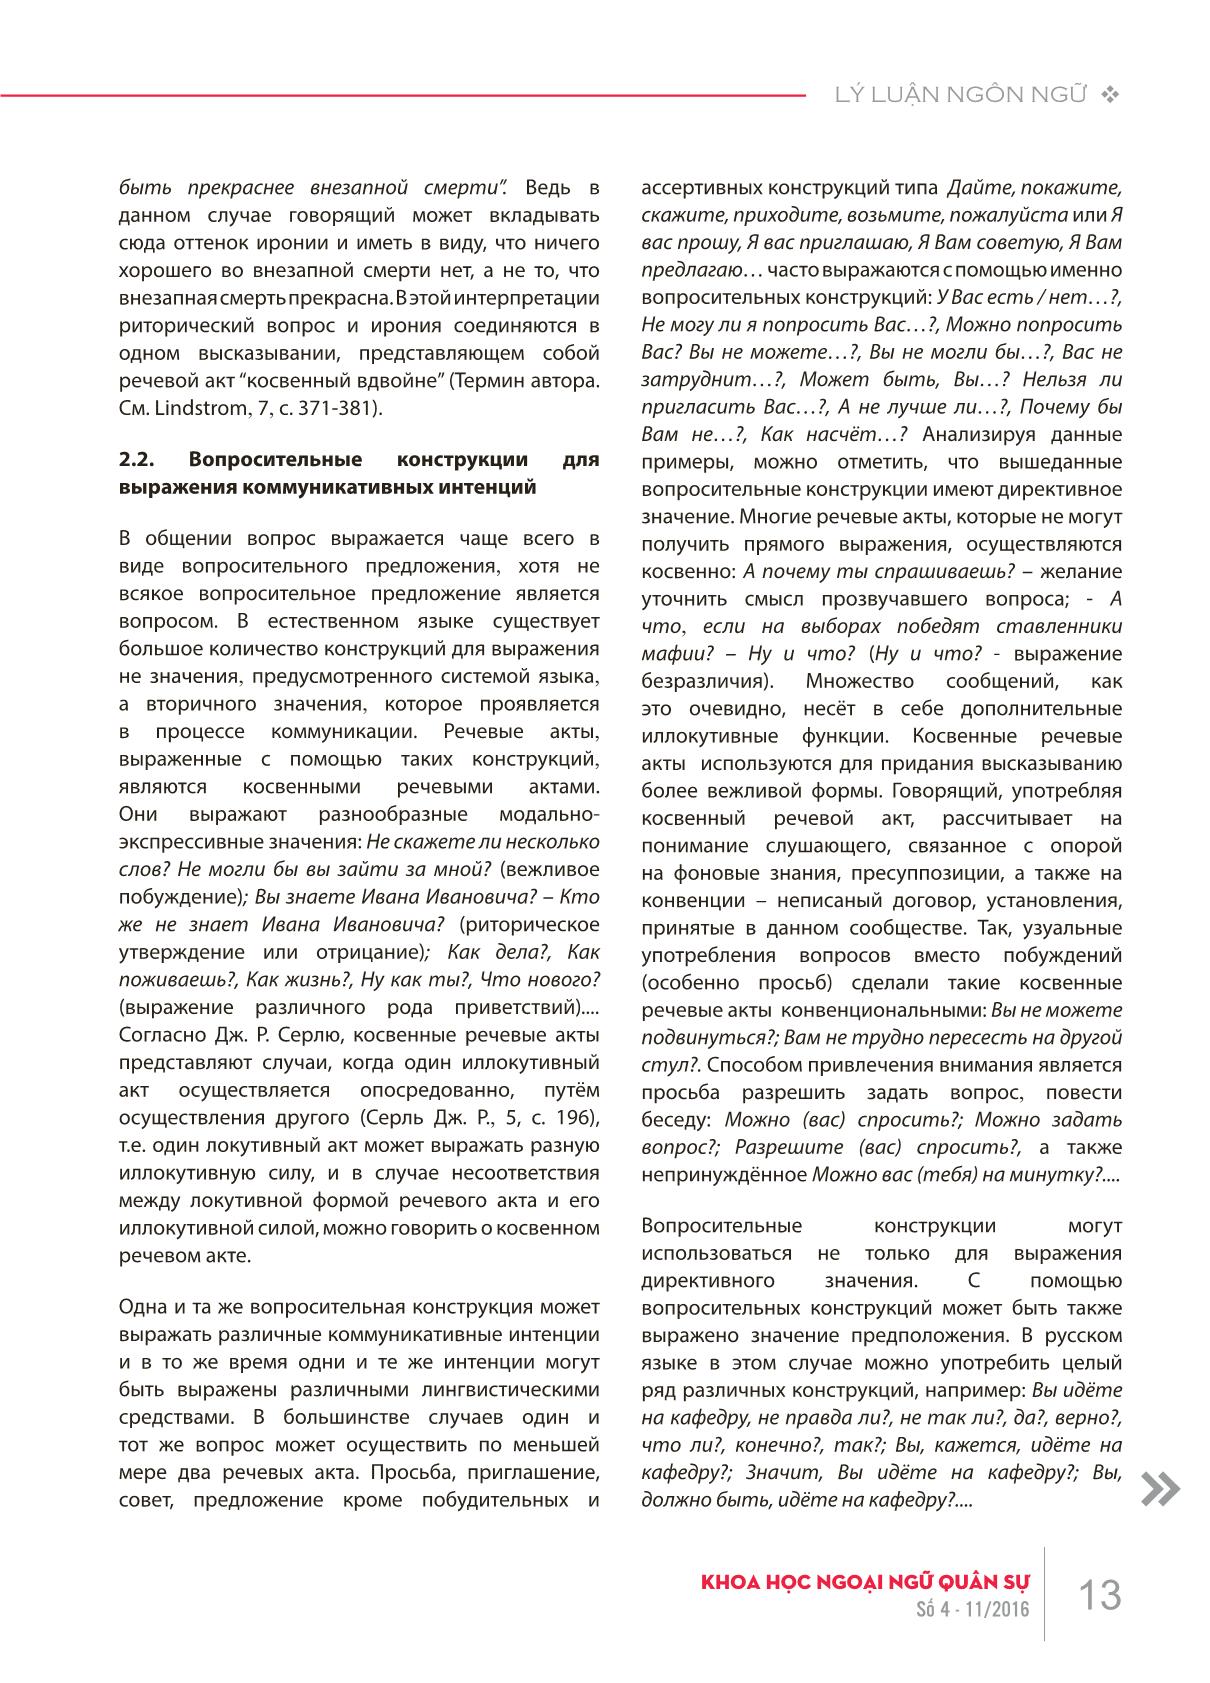 Bình diện ngữ dụng của câu nghi vấn trong tiếng Nga trang 3